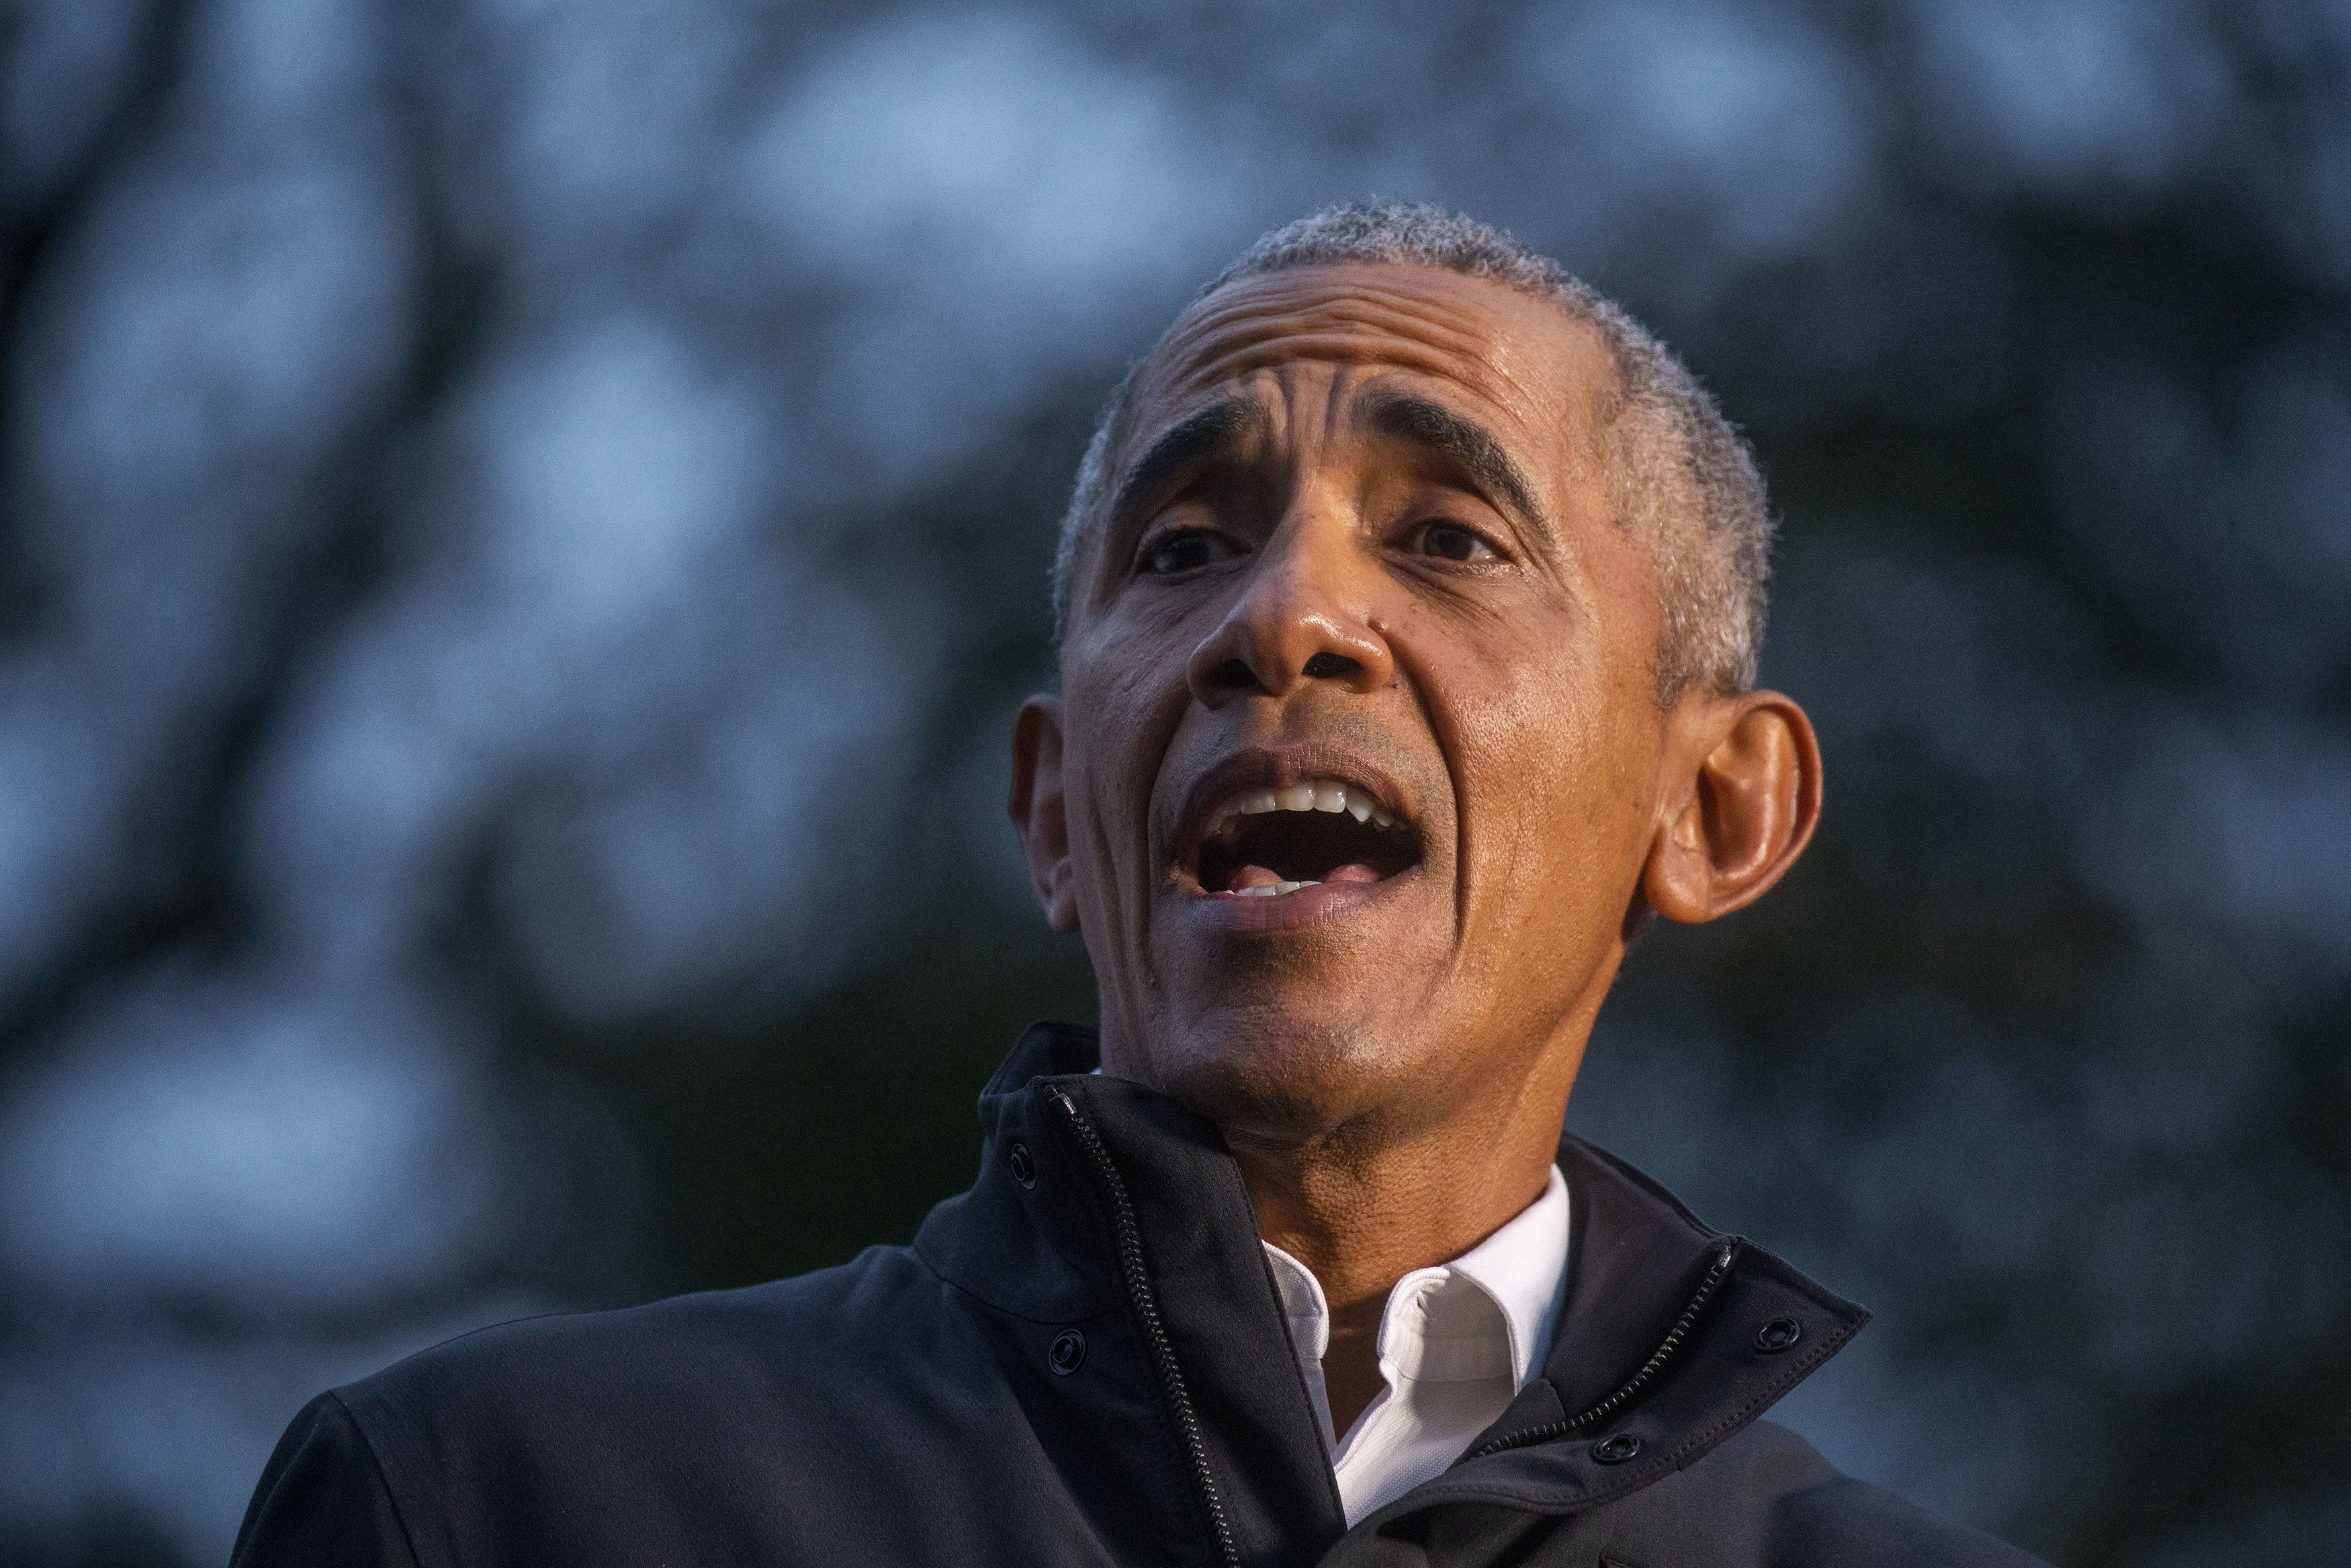 Barack Obama sale en defensa de Joe Biden tras ‘mala noche’ en debate presidencial